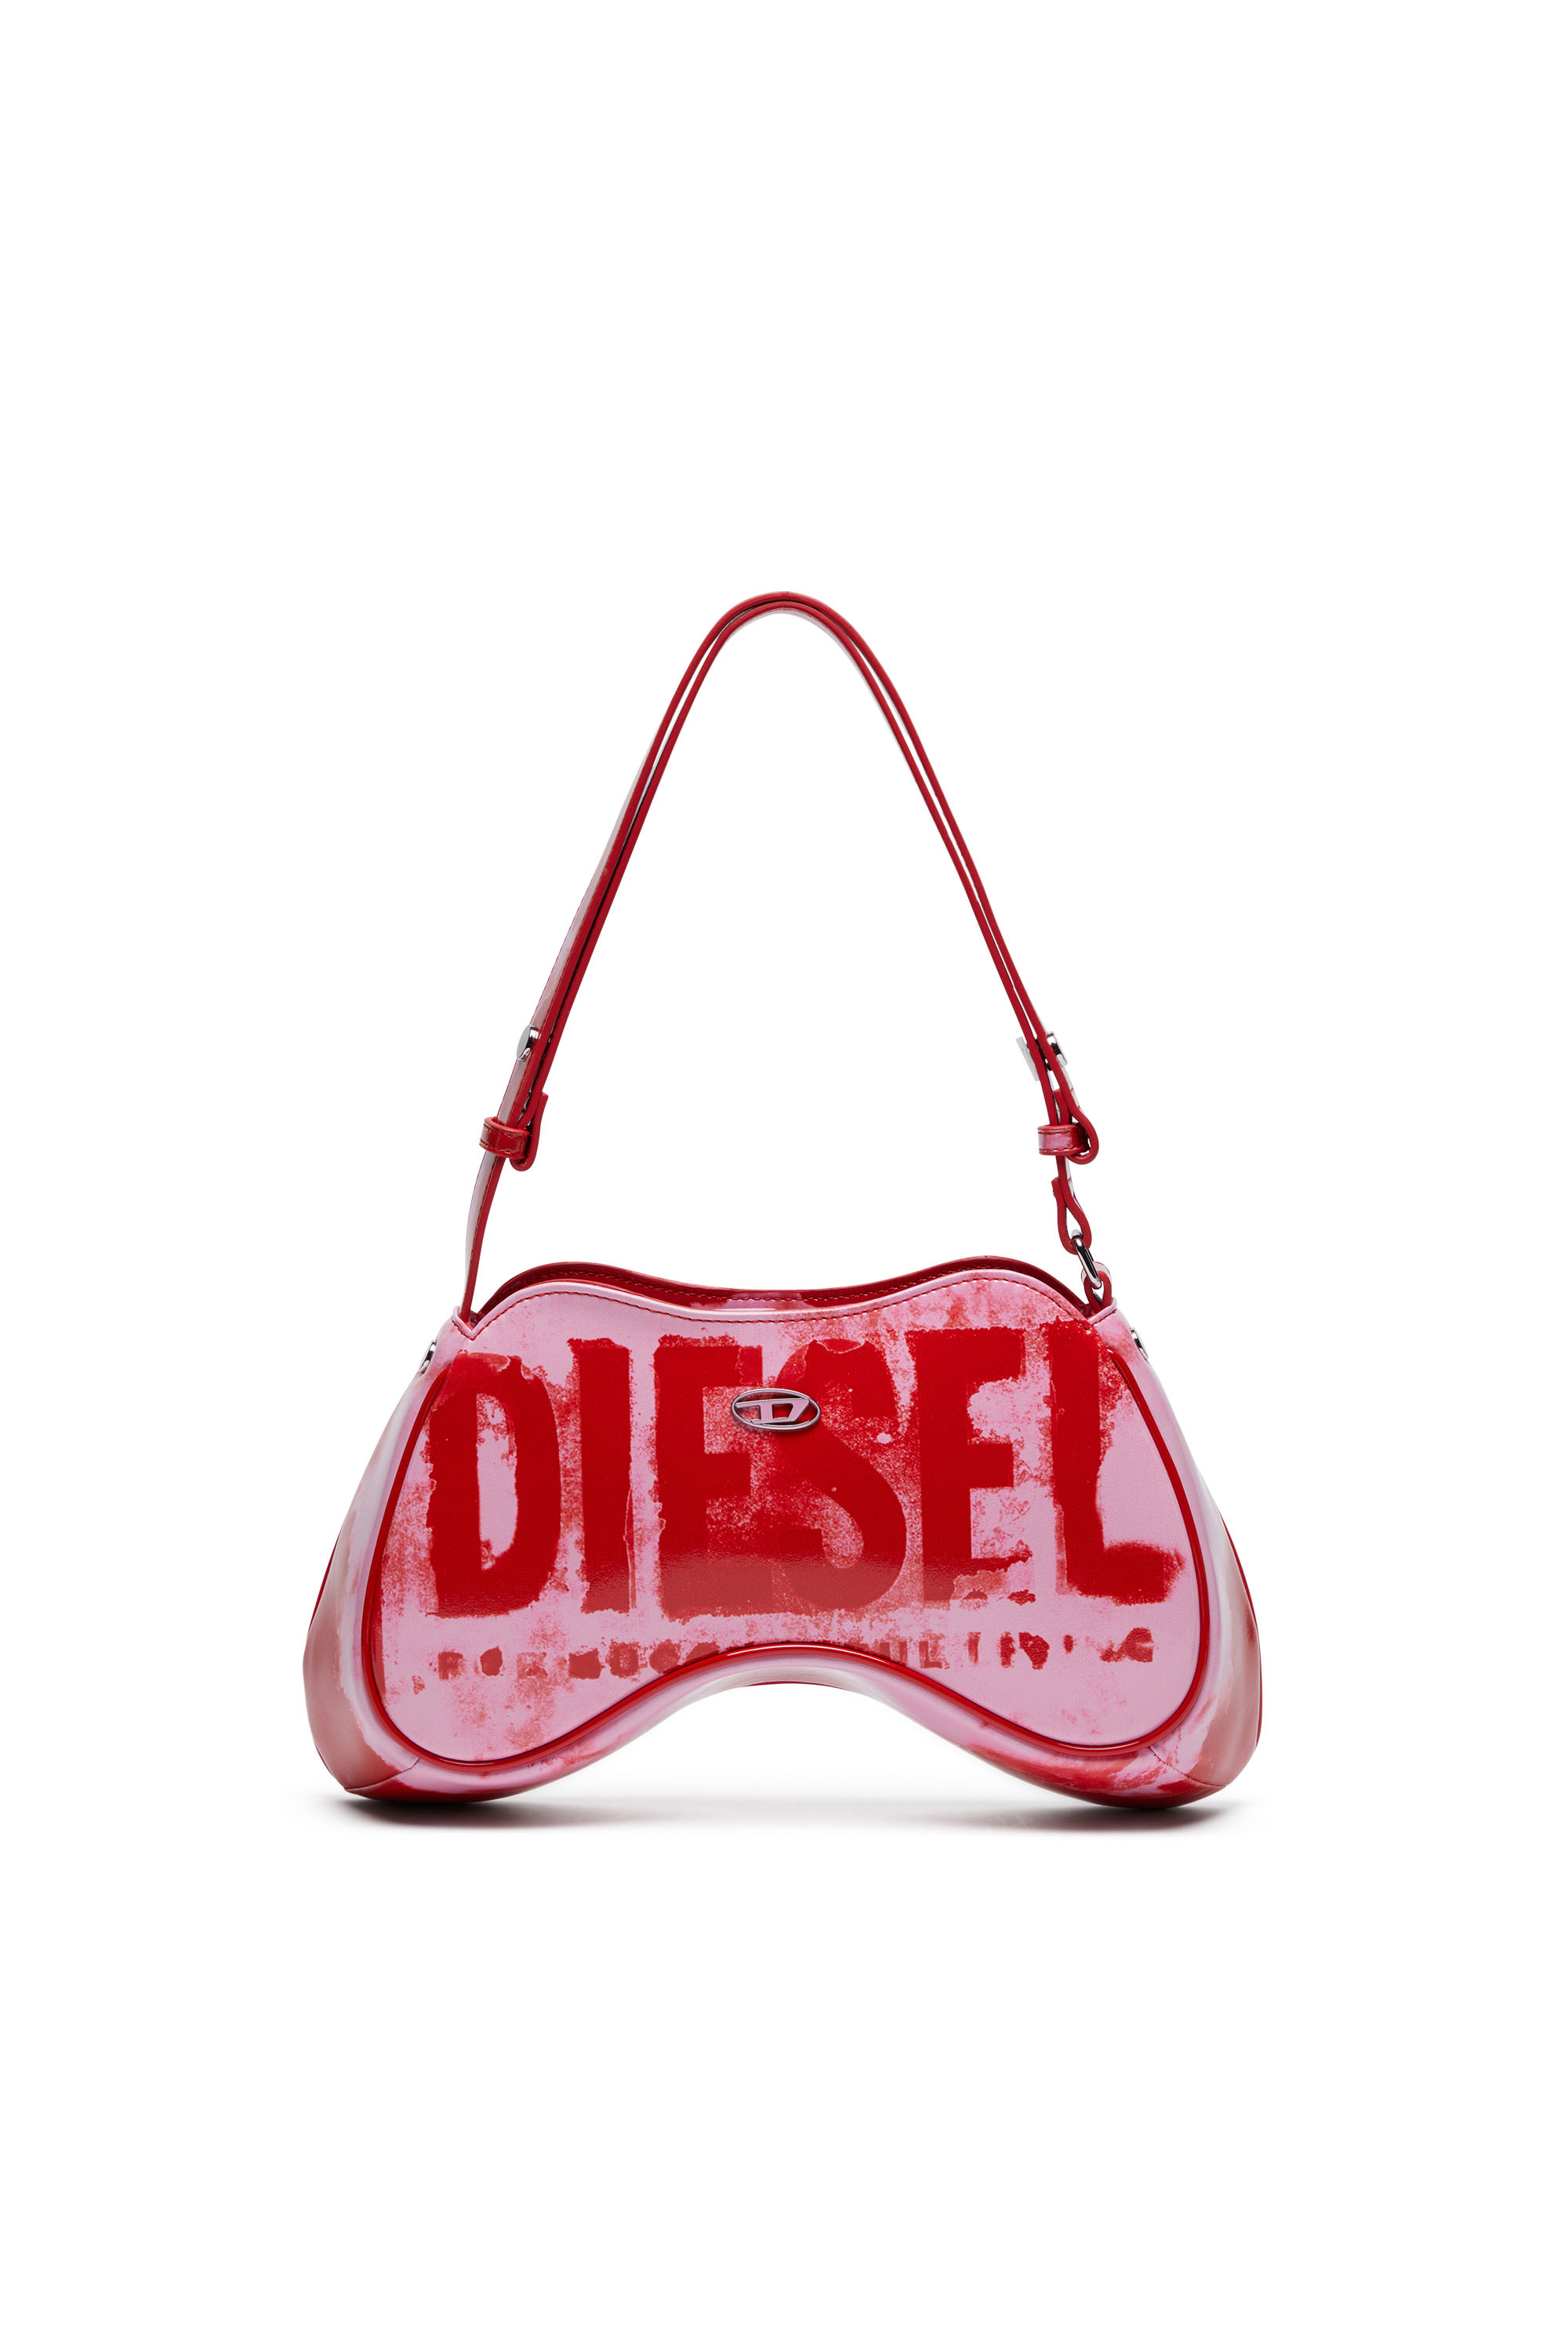 Diesel - PLAY SHOULDER, Woman Play-Shoulder bag in printed glossy PU in Multicolor - Image 1